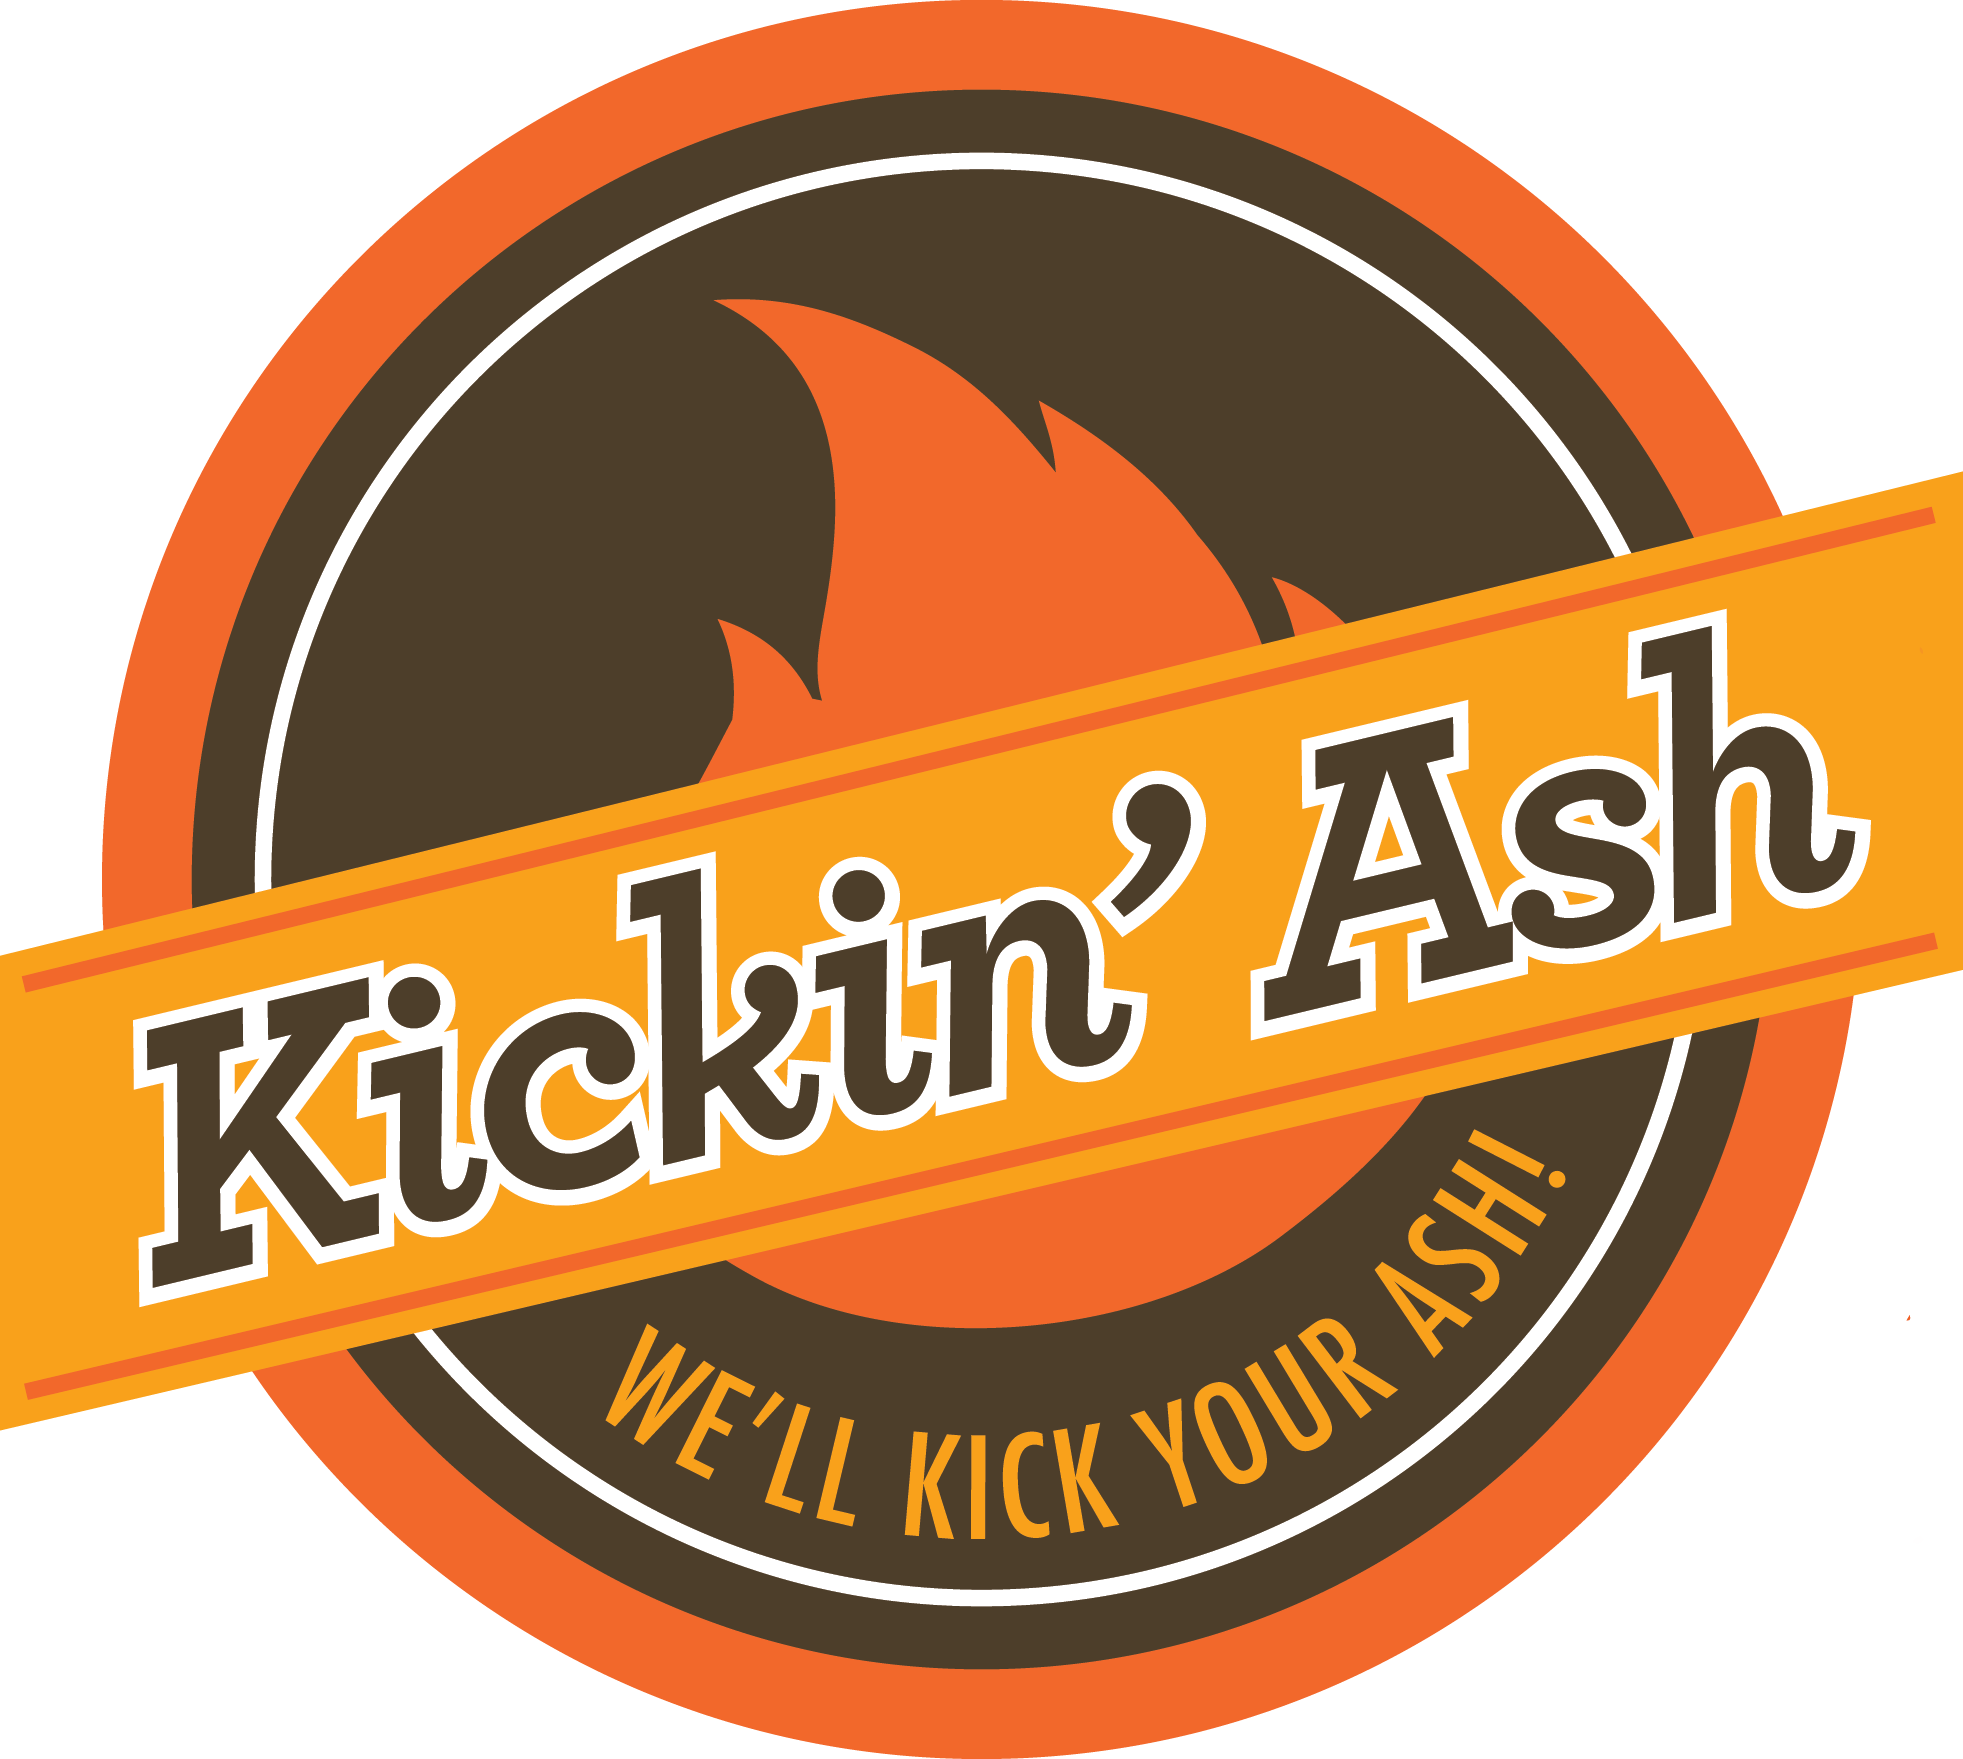 Kickin' Ash